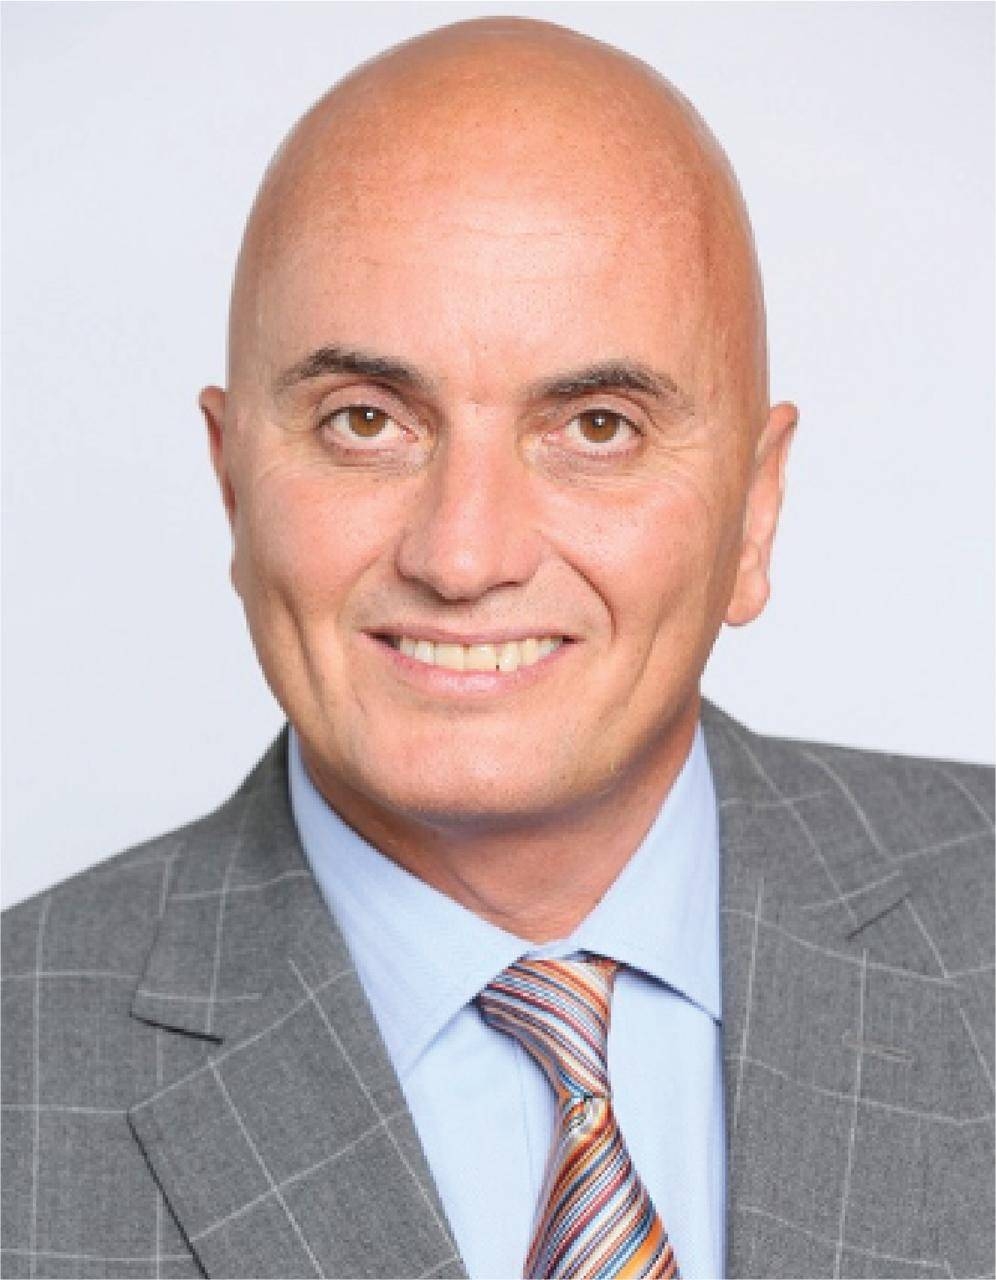 Ian Toal, CEO of Alfa Co